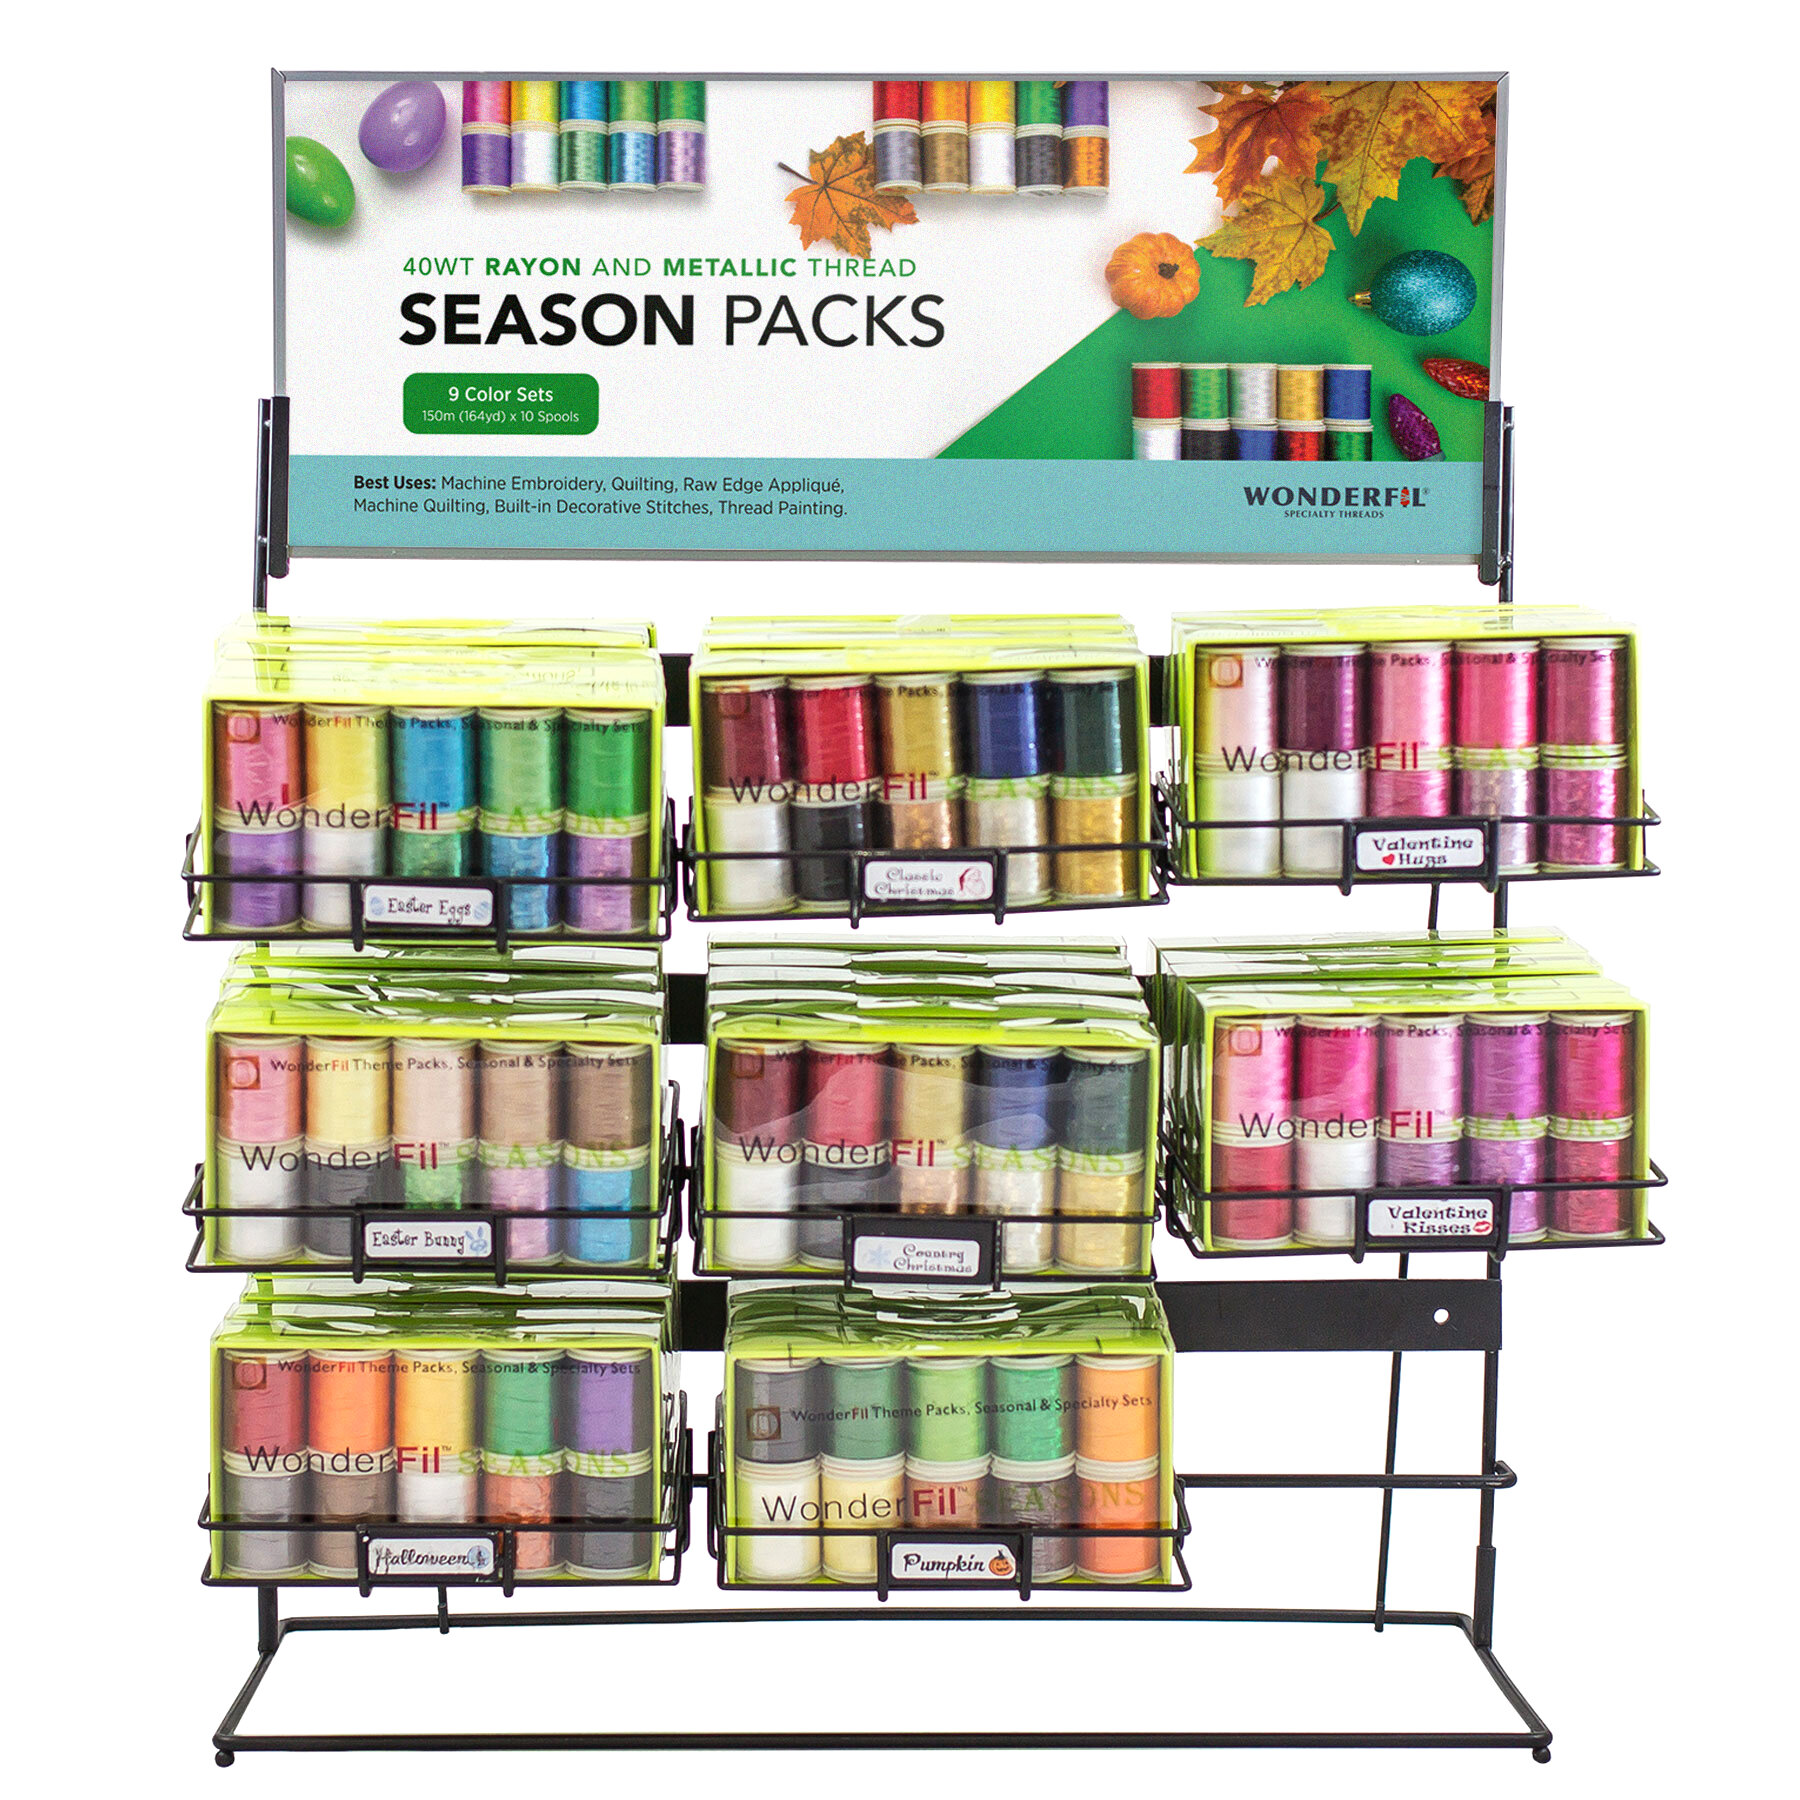 Seasons-Packs-Display.jpg